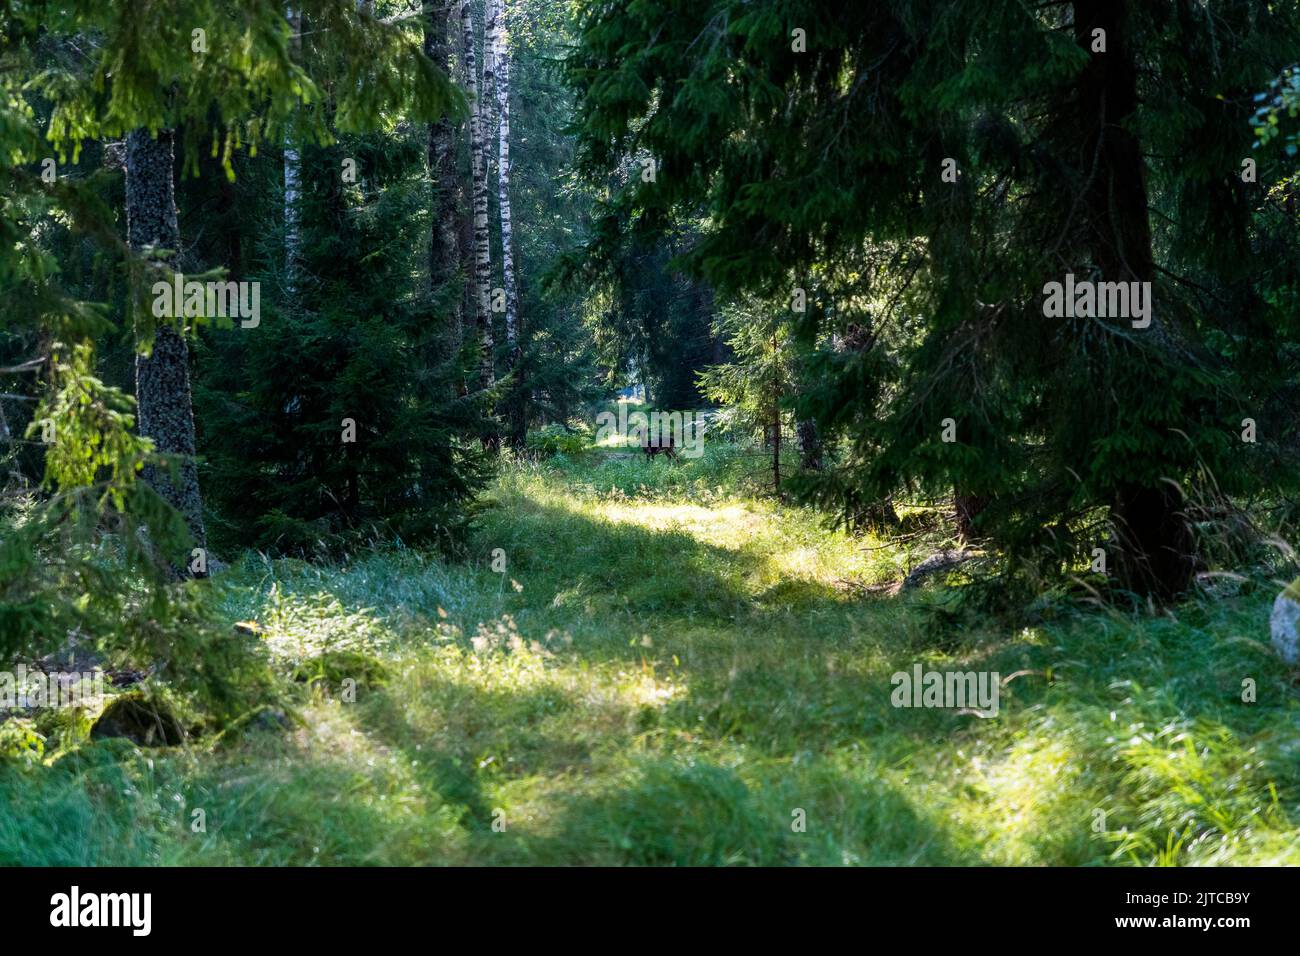 Shy deer in a forest clearing near Örebro kommun, Sweden Stock Photo